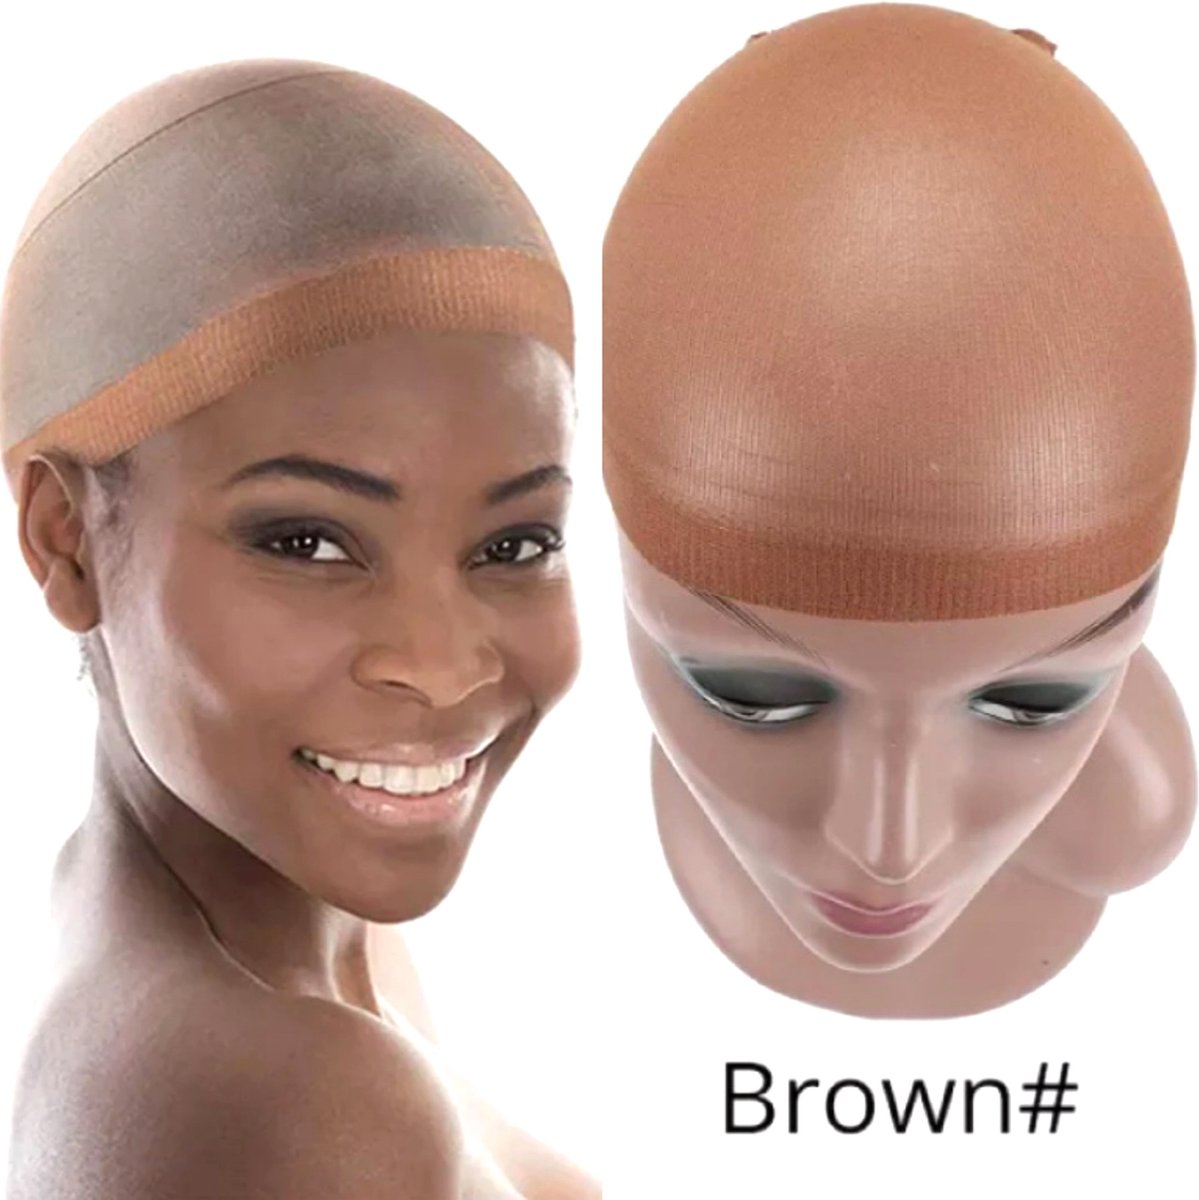 Dream Wig Cap voor Pruik 2 Stuks - Chocolade pruikennetten Dames